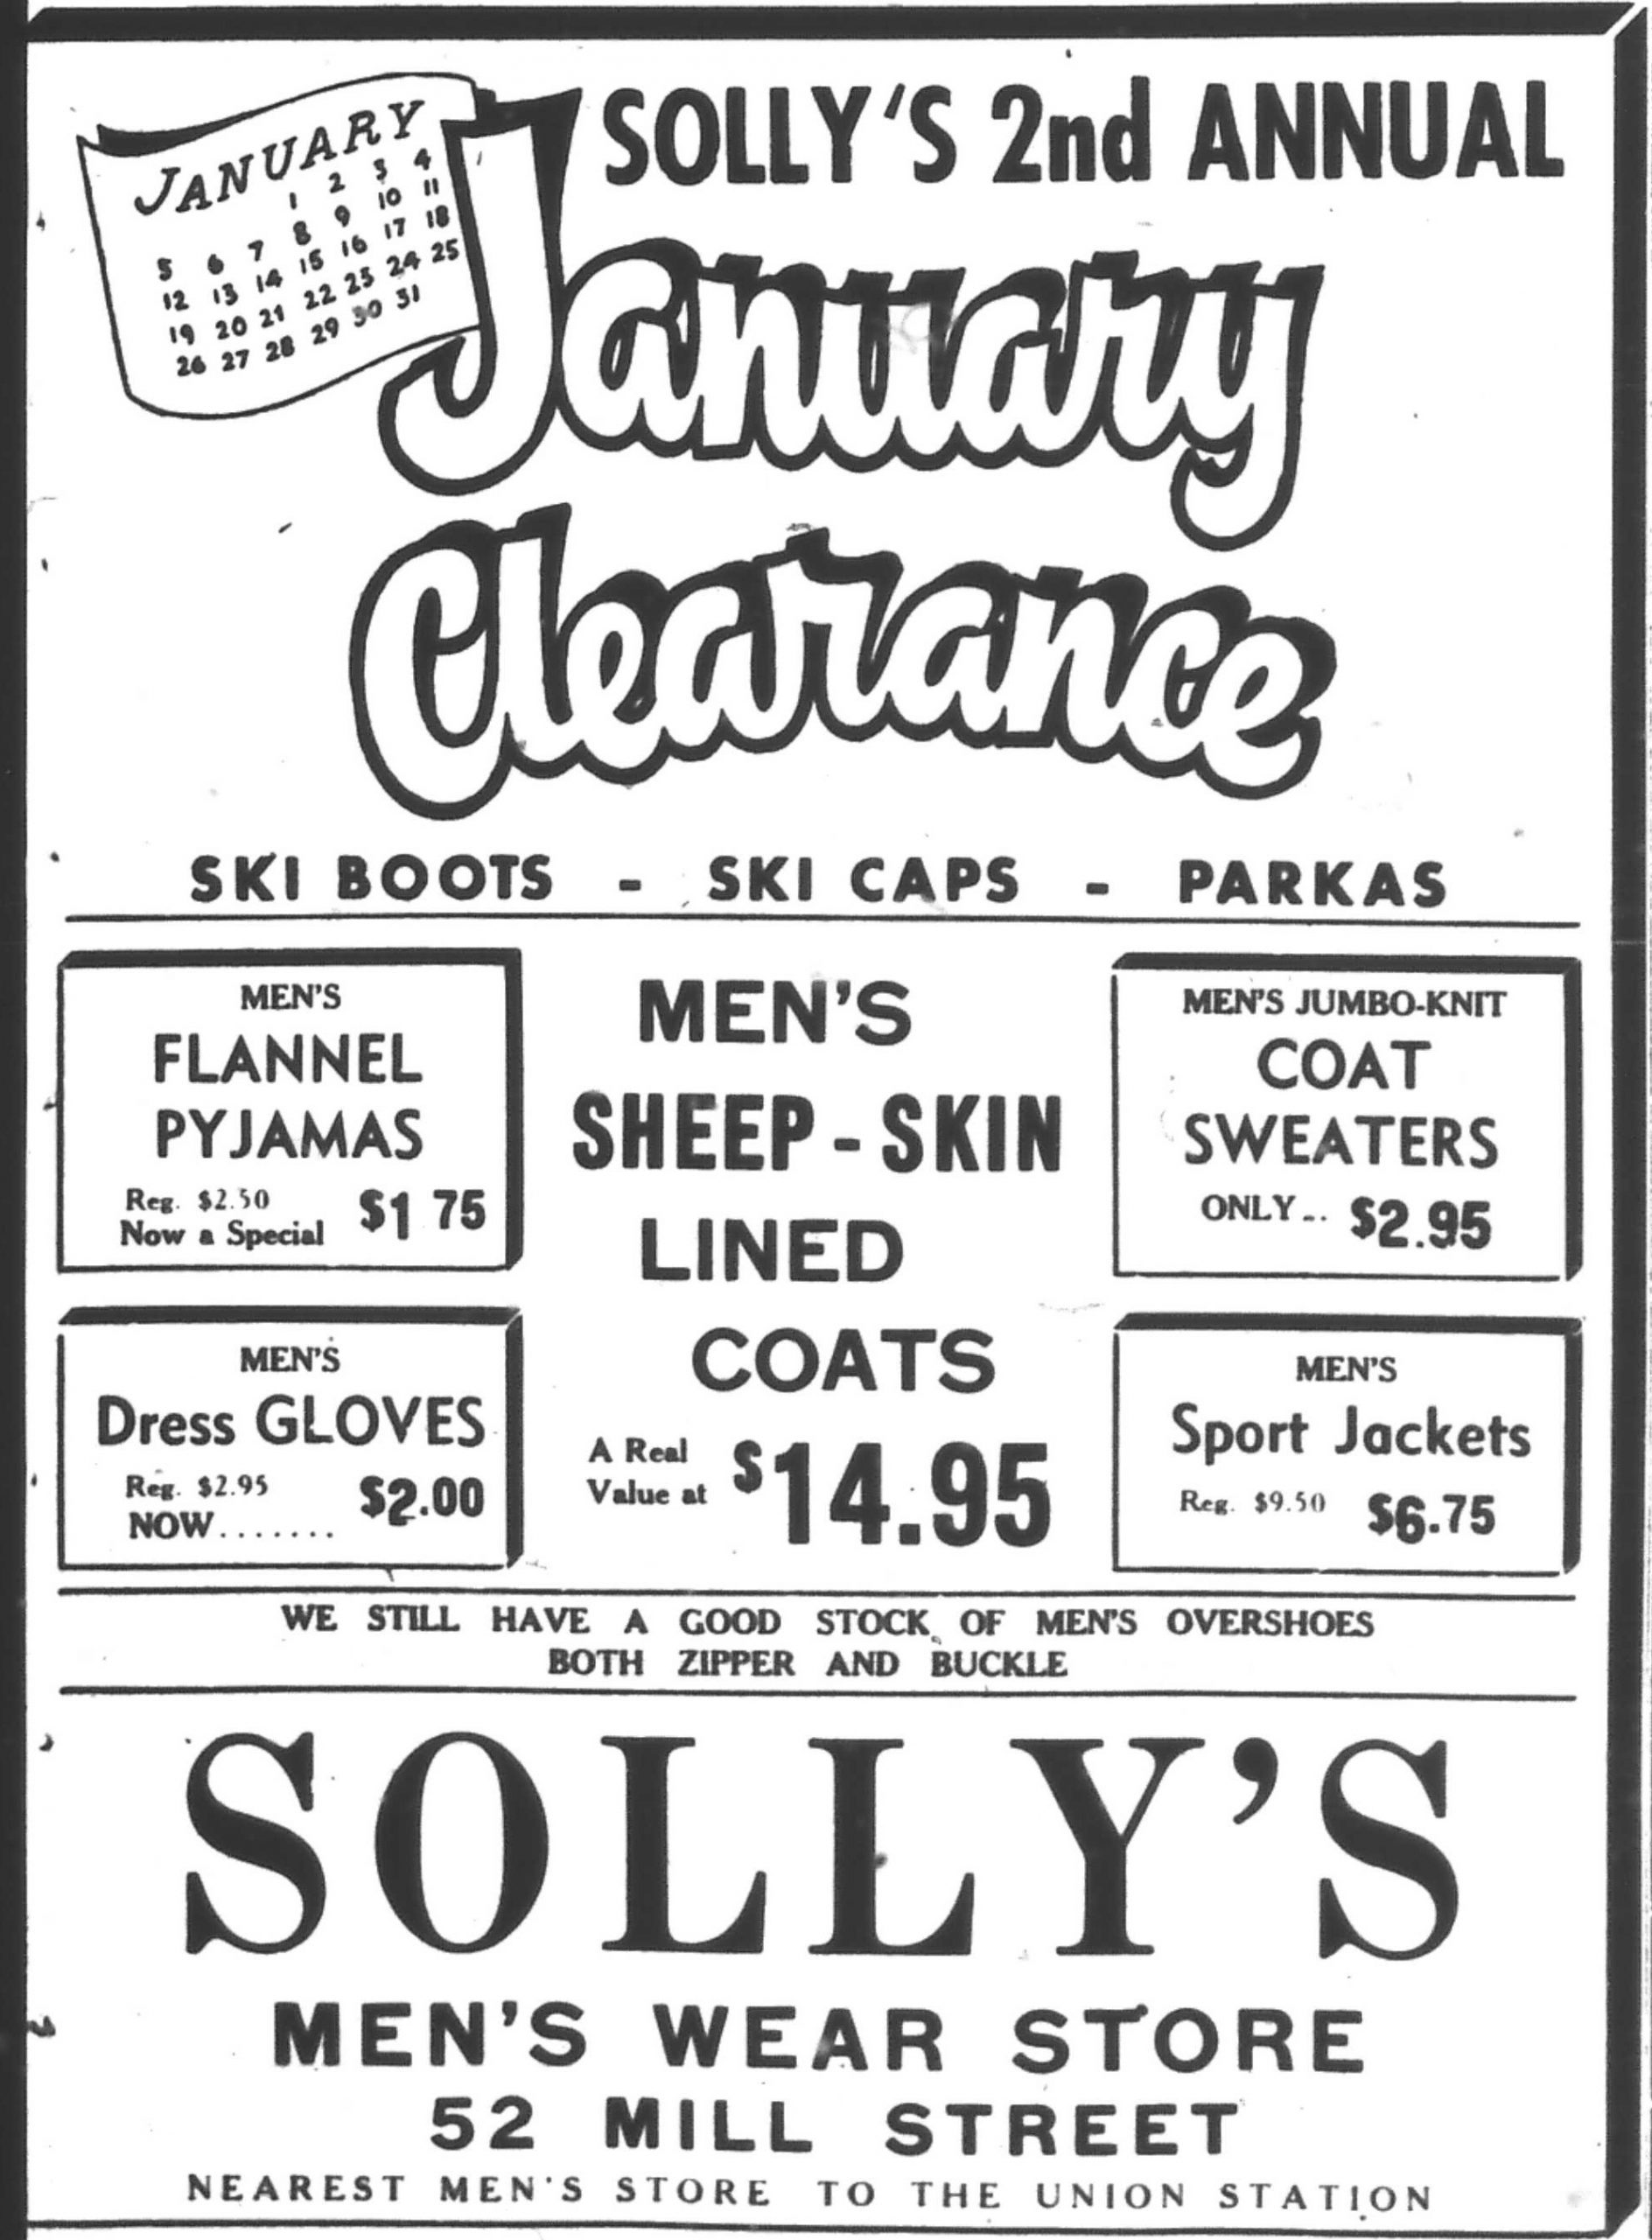 Publicité de presse intitulée « Solly’s 2nd annual January Clearance »” avec les prix de divers modèles de pyjamas, de gants, de chandails et de manteaux doublés en peau de mouton.